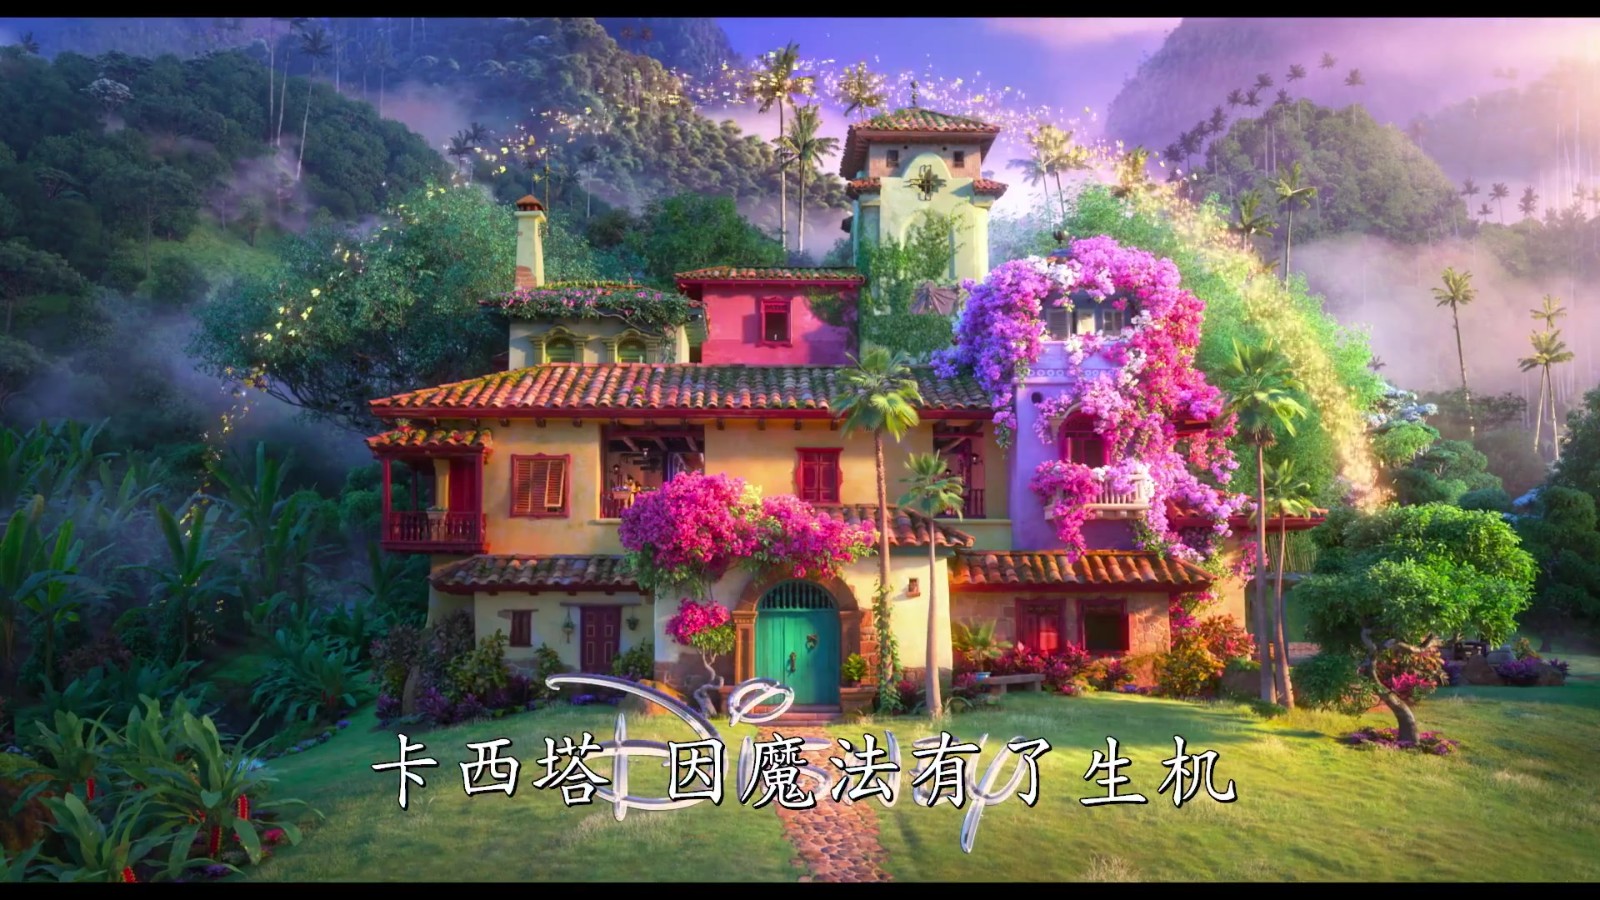 迪士尼原创动画《魔法满屋》全新中文预告公开